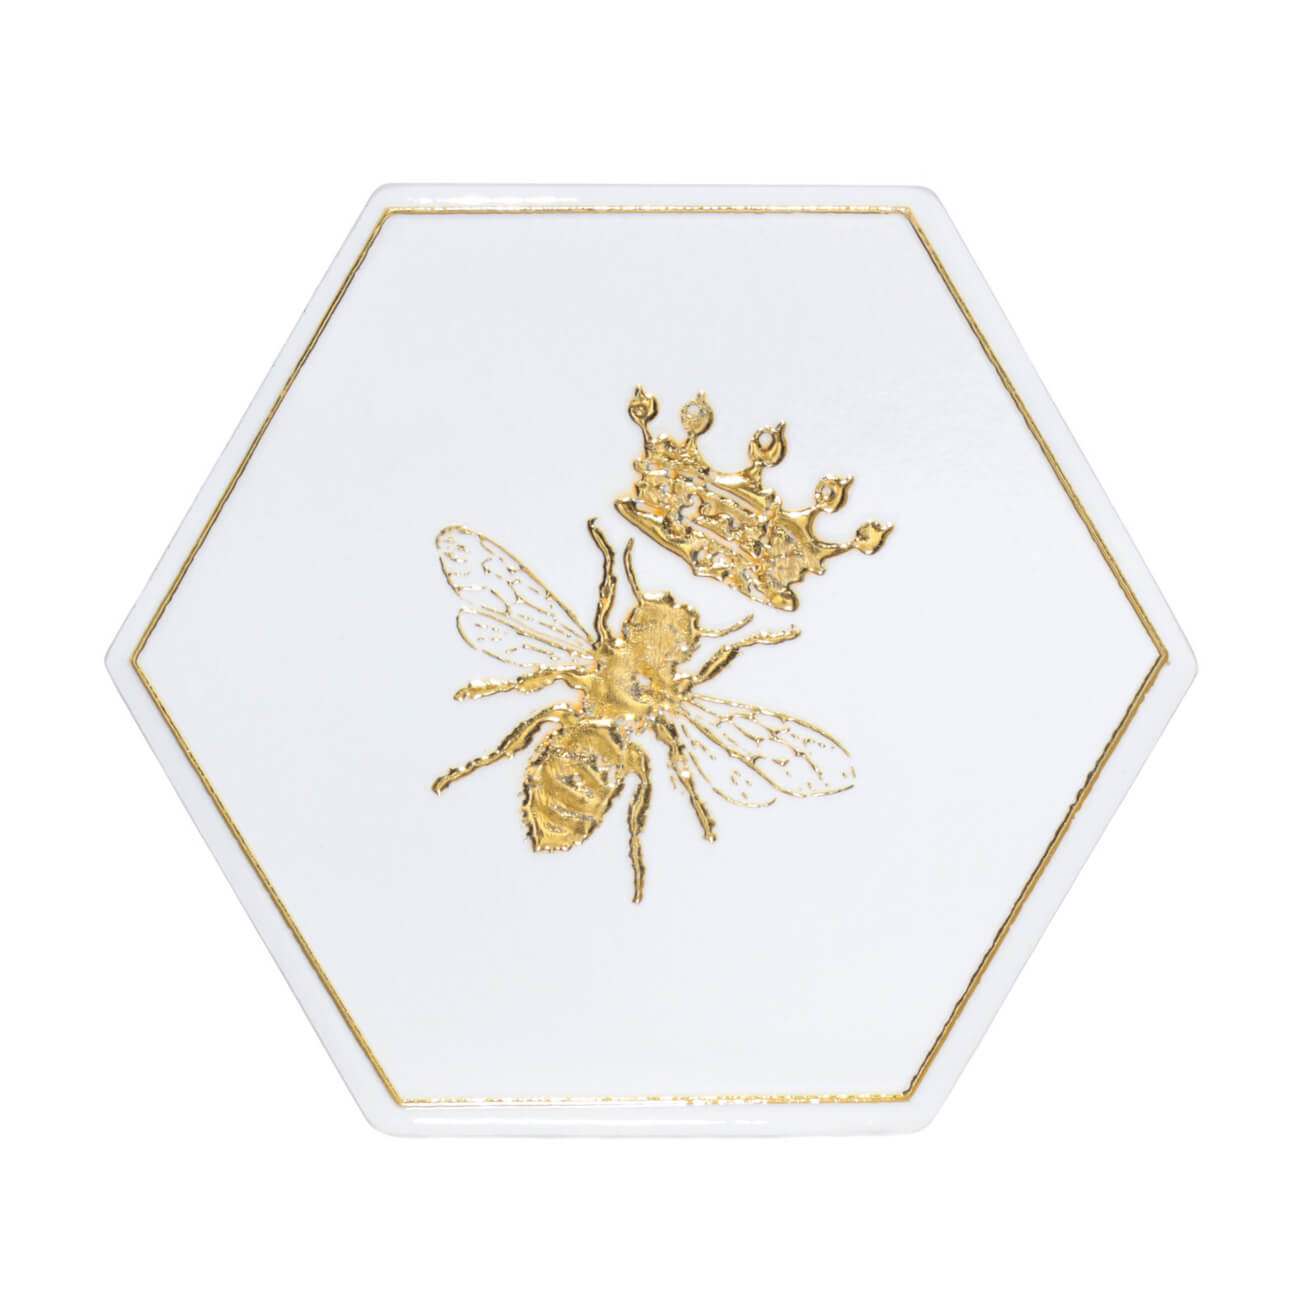 Подставка под кружку, 11 см, керамика/пробка, шестиугольная, белая, Королевская пчела, Honey клетка шестиугольная бабочки 28х48см белая